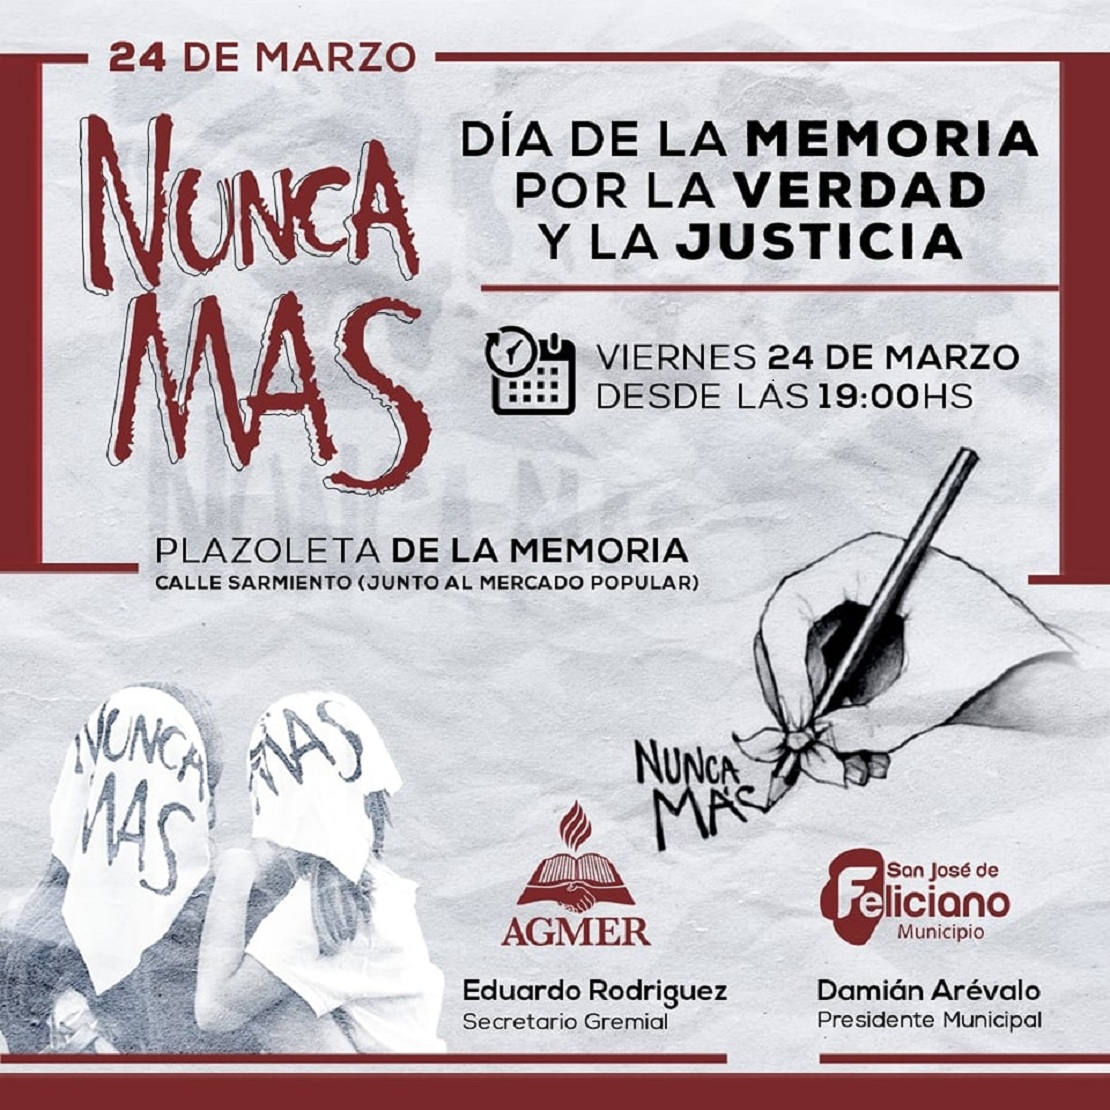 Acto oficial: Día de la MEMORIA por la VERDAD y la JUSTICIA